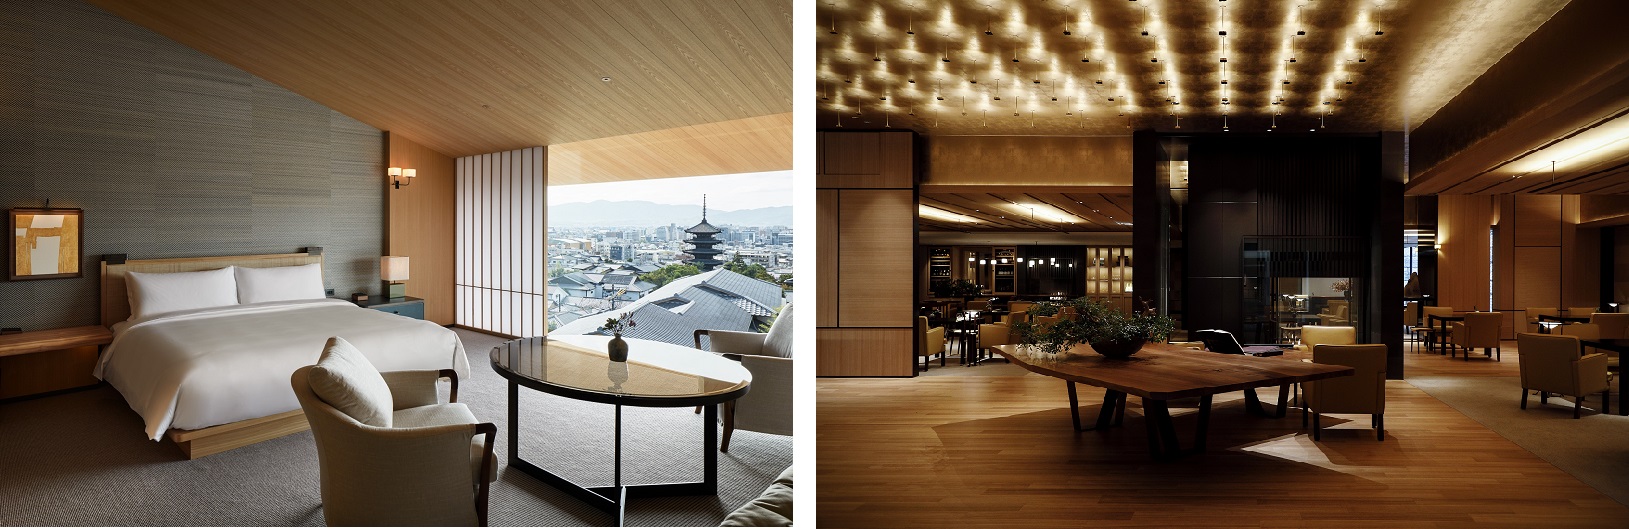 パーク ハイアット 京都およびモダニスアンドカンパニー共催、完全紹介制デザートレストラン「Kominasemako」よりパティシエール駒瀬奈美⼦氏を迎え、期間限定『桃のデザートコース』を提供のサブ画像3_（写真左）八坂の塔を含む京都市街が一望できる客室「ビューデラックスキング」(68㎡) （写真右）ご自宅のリビングルームのように寛いでいただけるコンセプトのラウンジスペース「ザ リビングルーム」